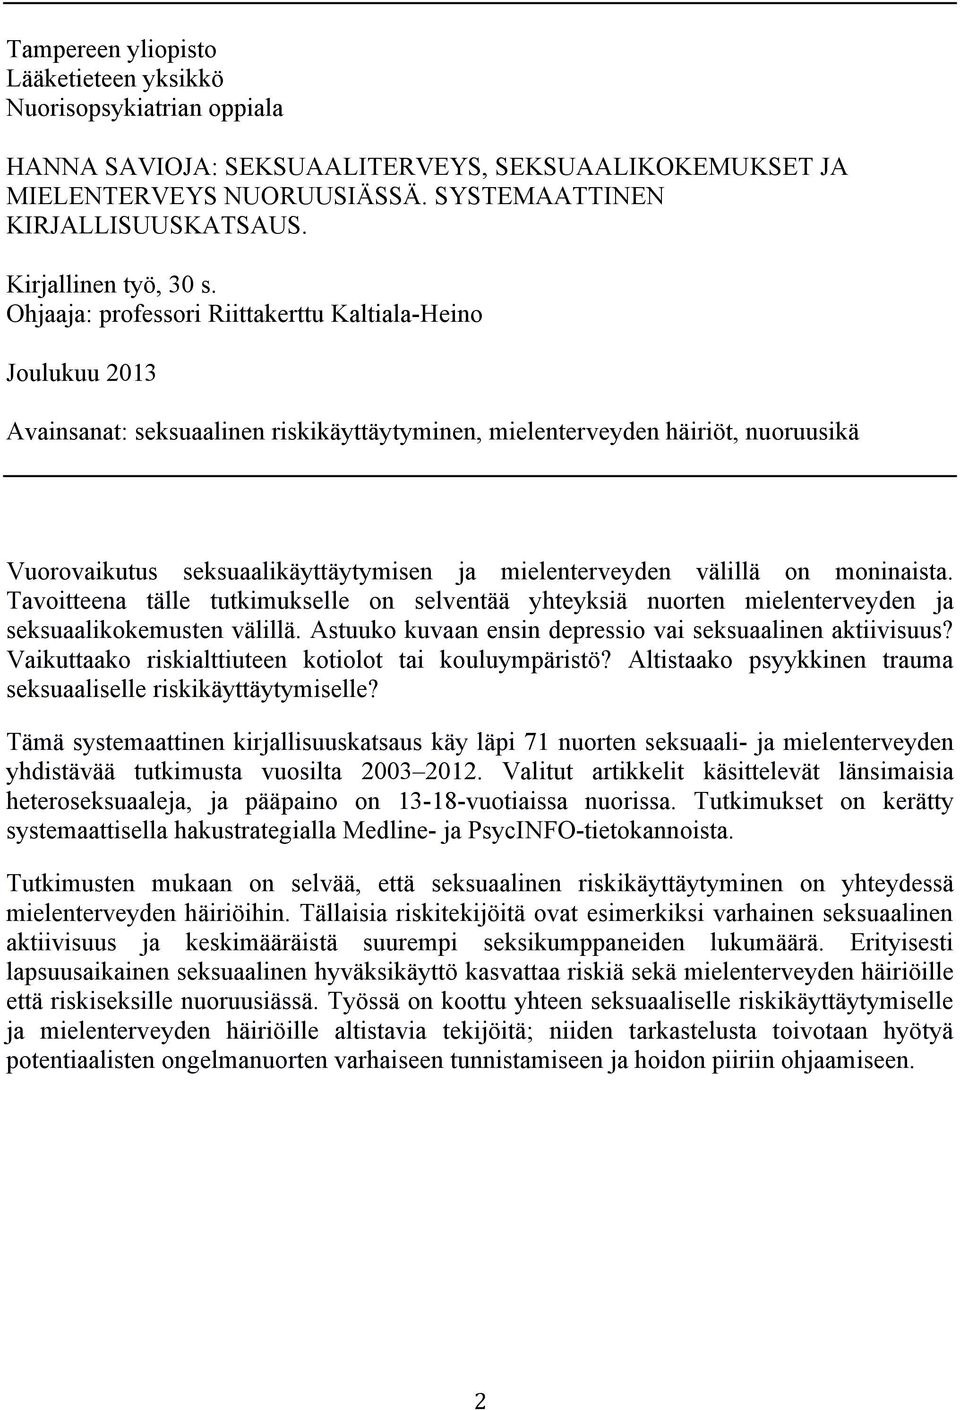 Ohjaaja: professori Riittakerttu Kaltiala-Heino Joulukuu 2013 Avainsanat: seksuaalinen riskikäyttäytyminen, mielenterveyden häiriöt, nuoruusikä Vuorovaikutus seksuaalikäyttäytymisen ja